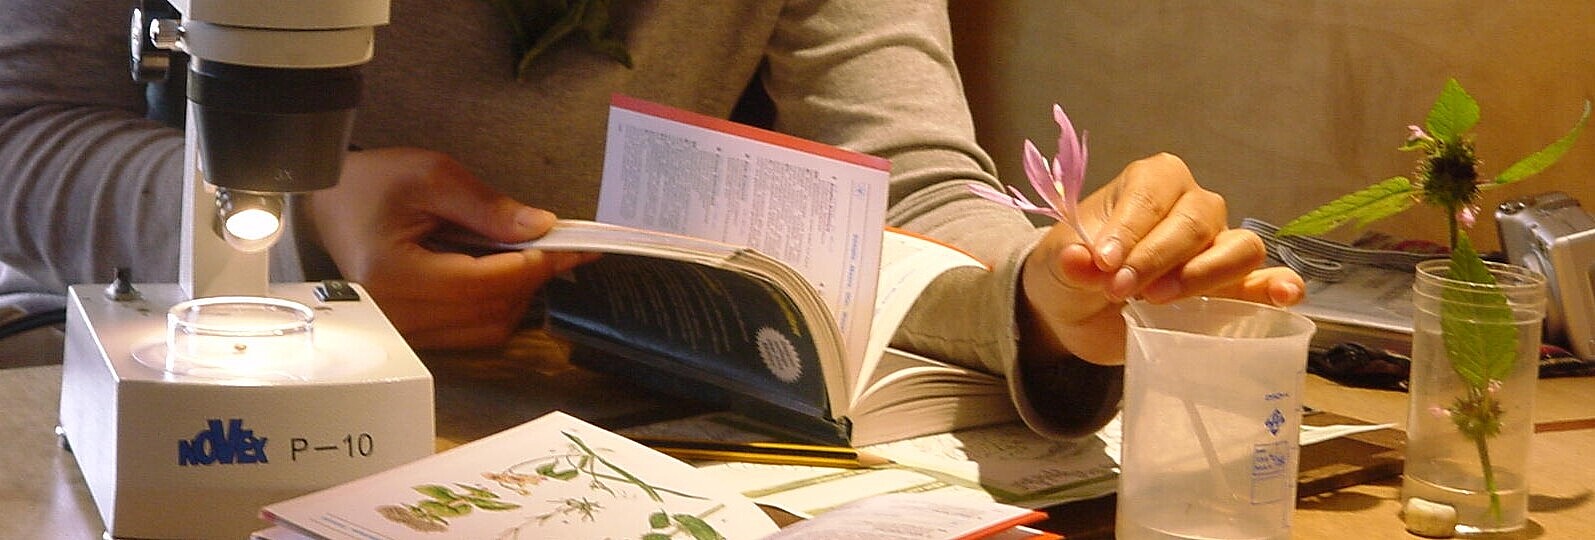 Eine Jugendiche hält eine pflanze in der Hand und ein Bestimmungsbuch.